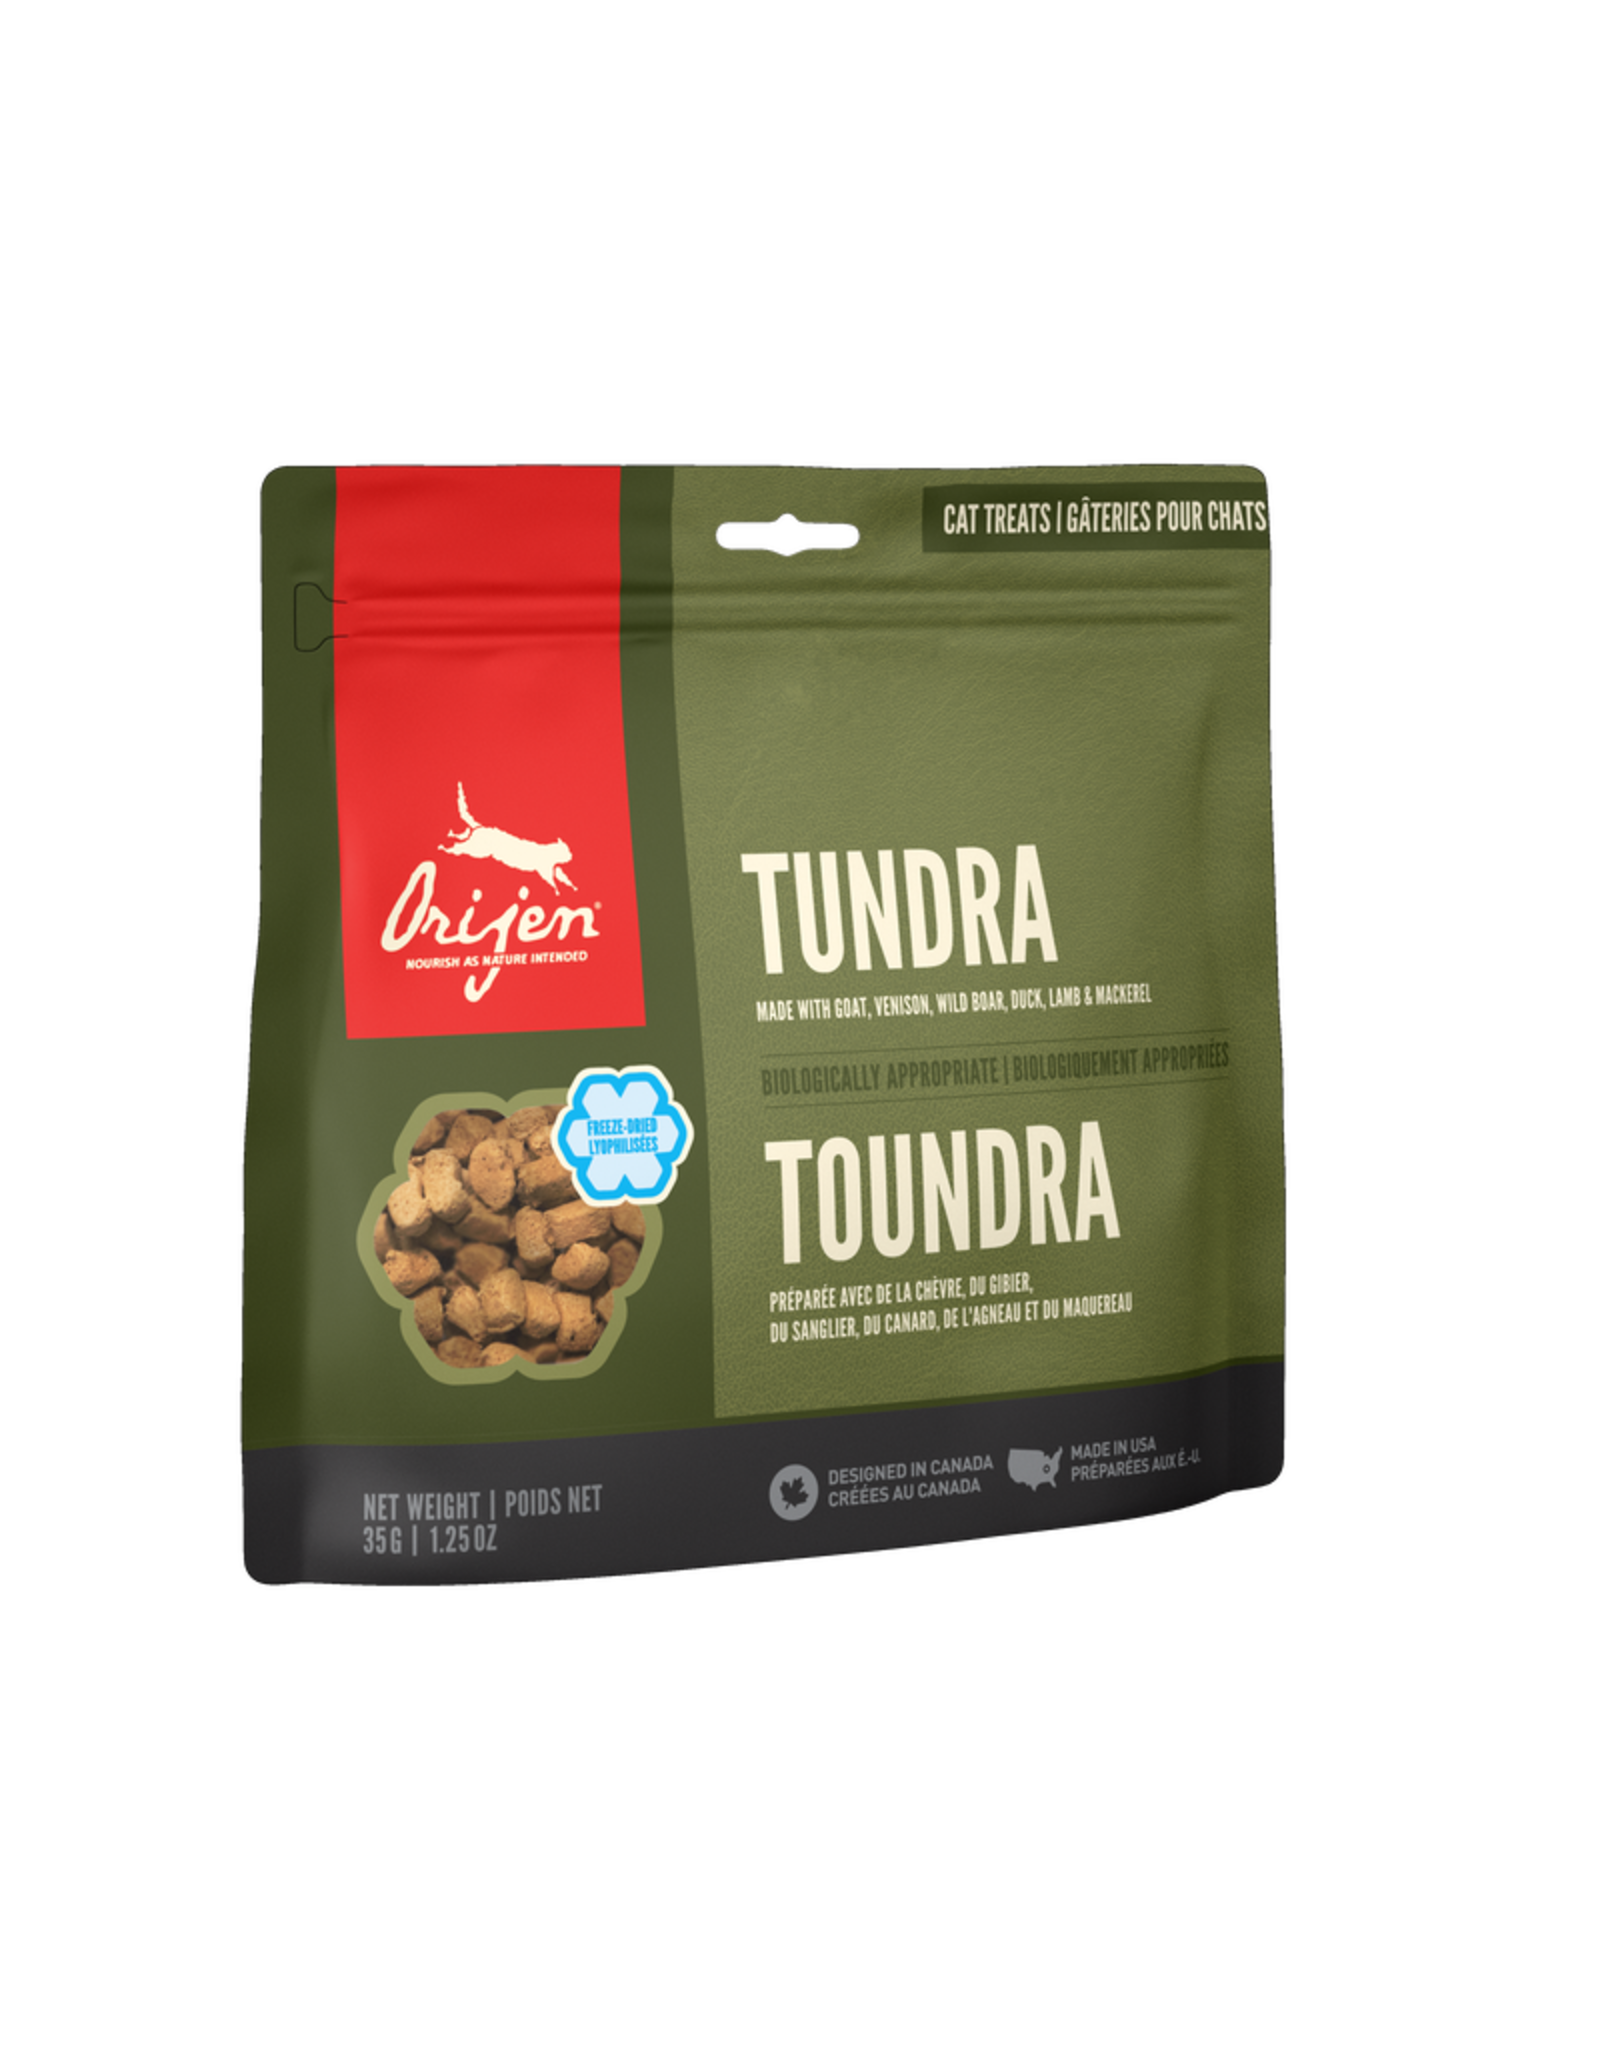 tundra cat treats